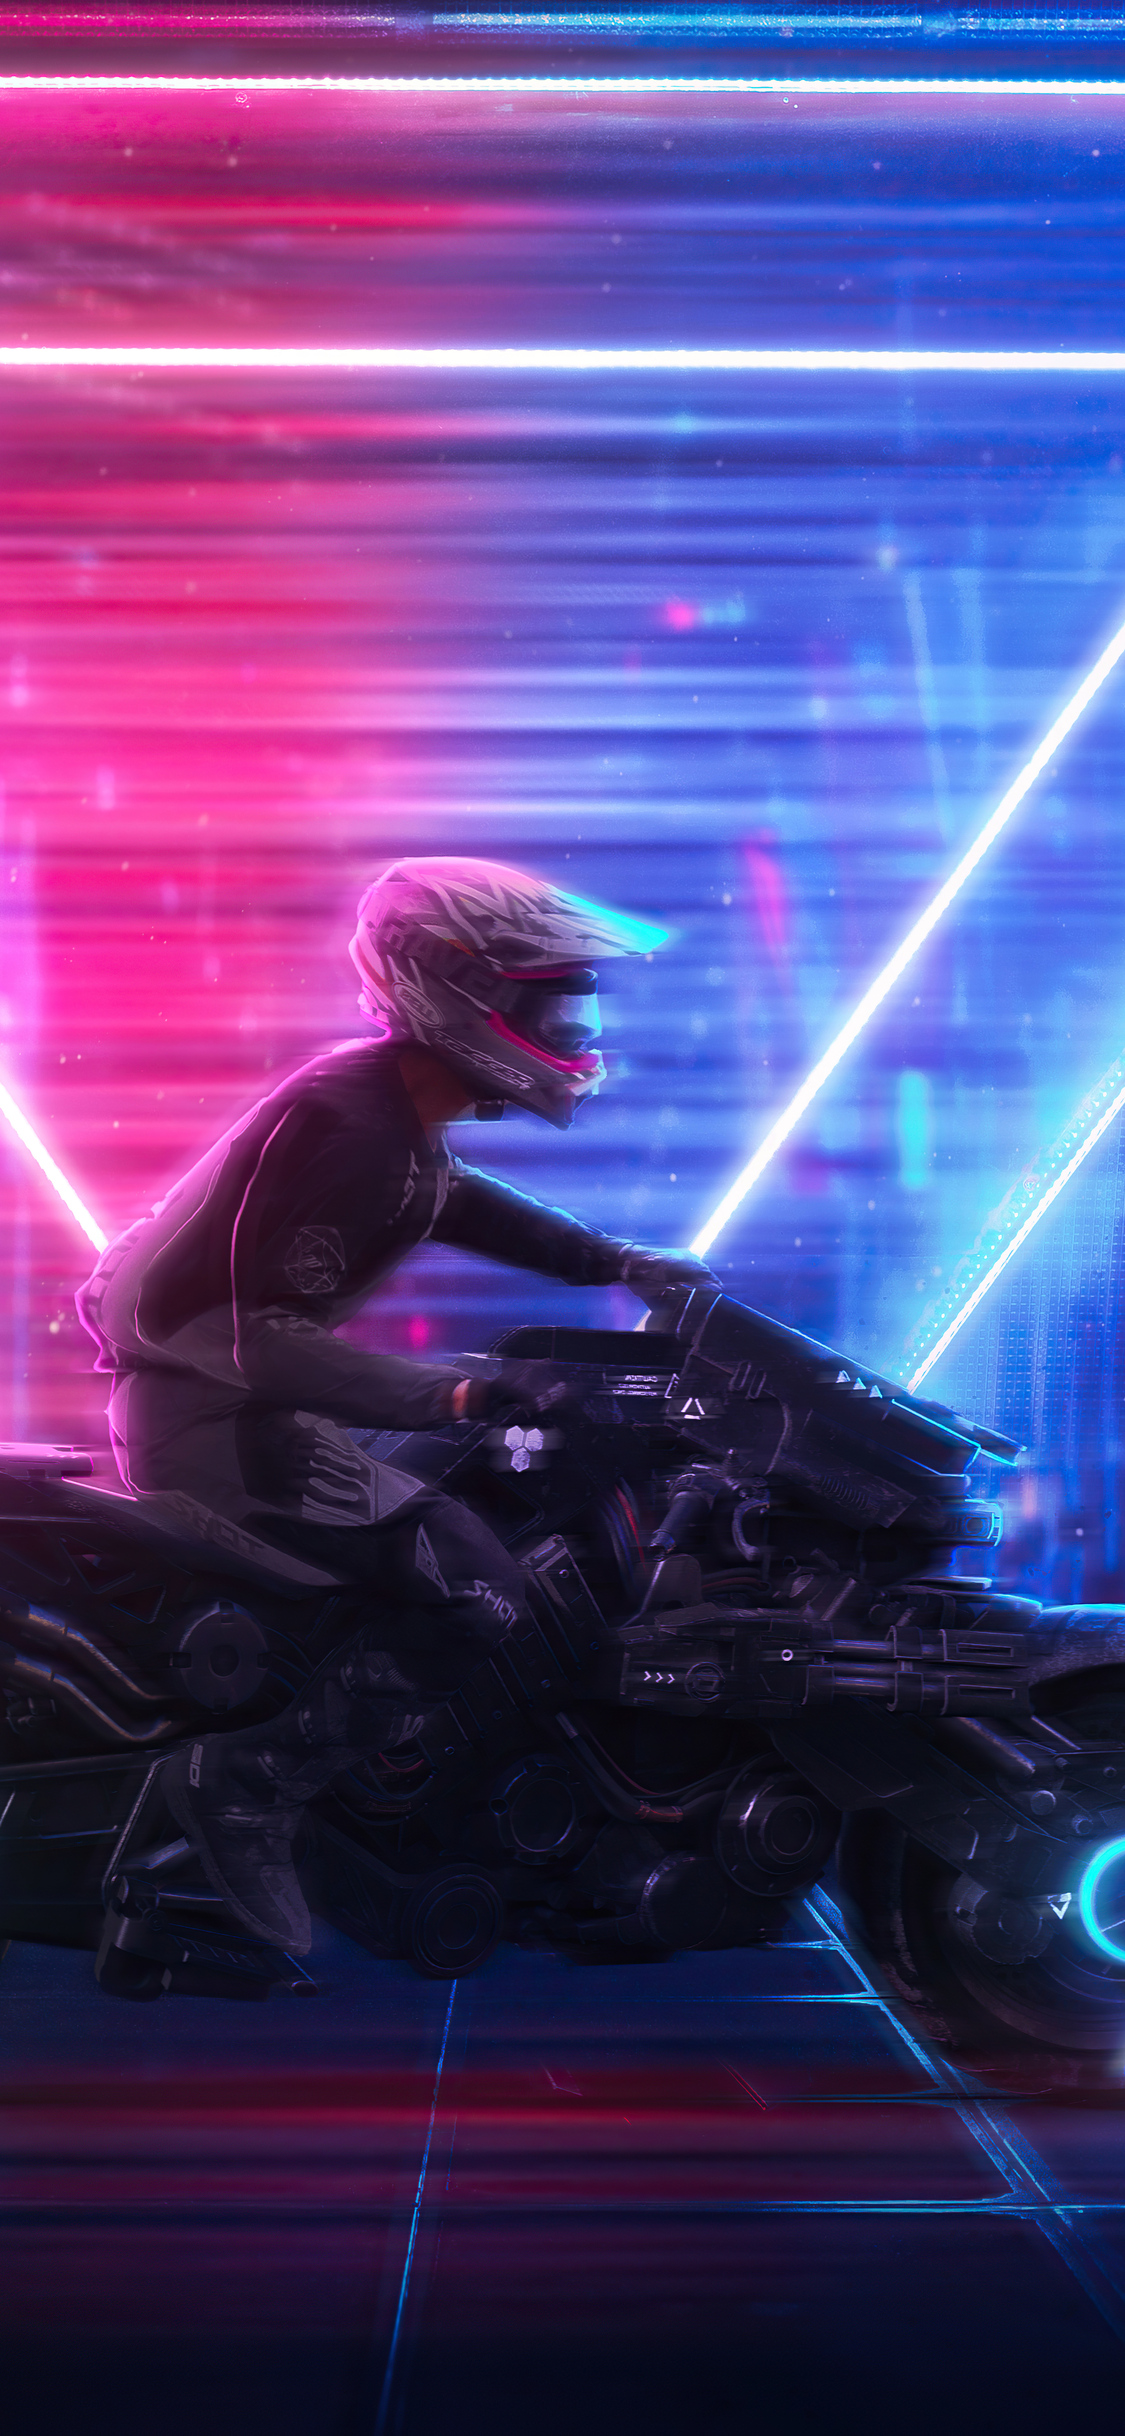 neon-biker-jj.jpg